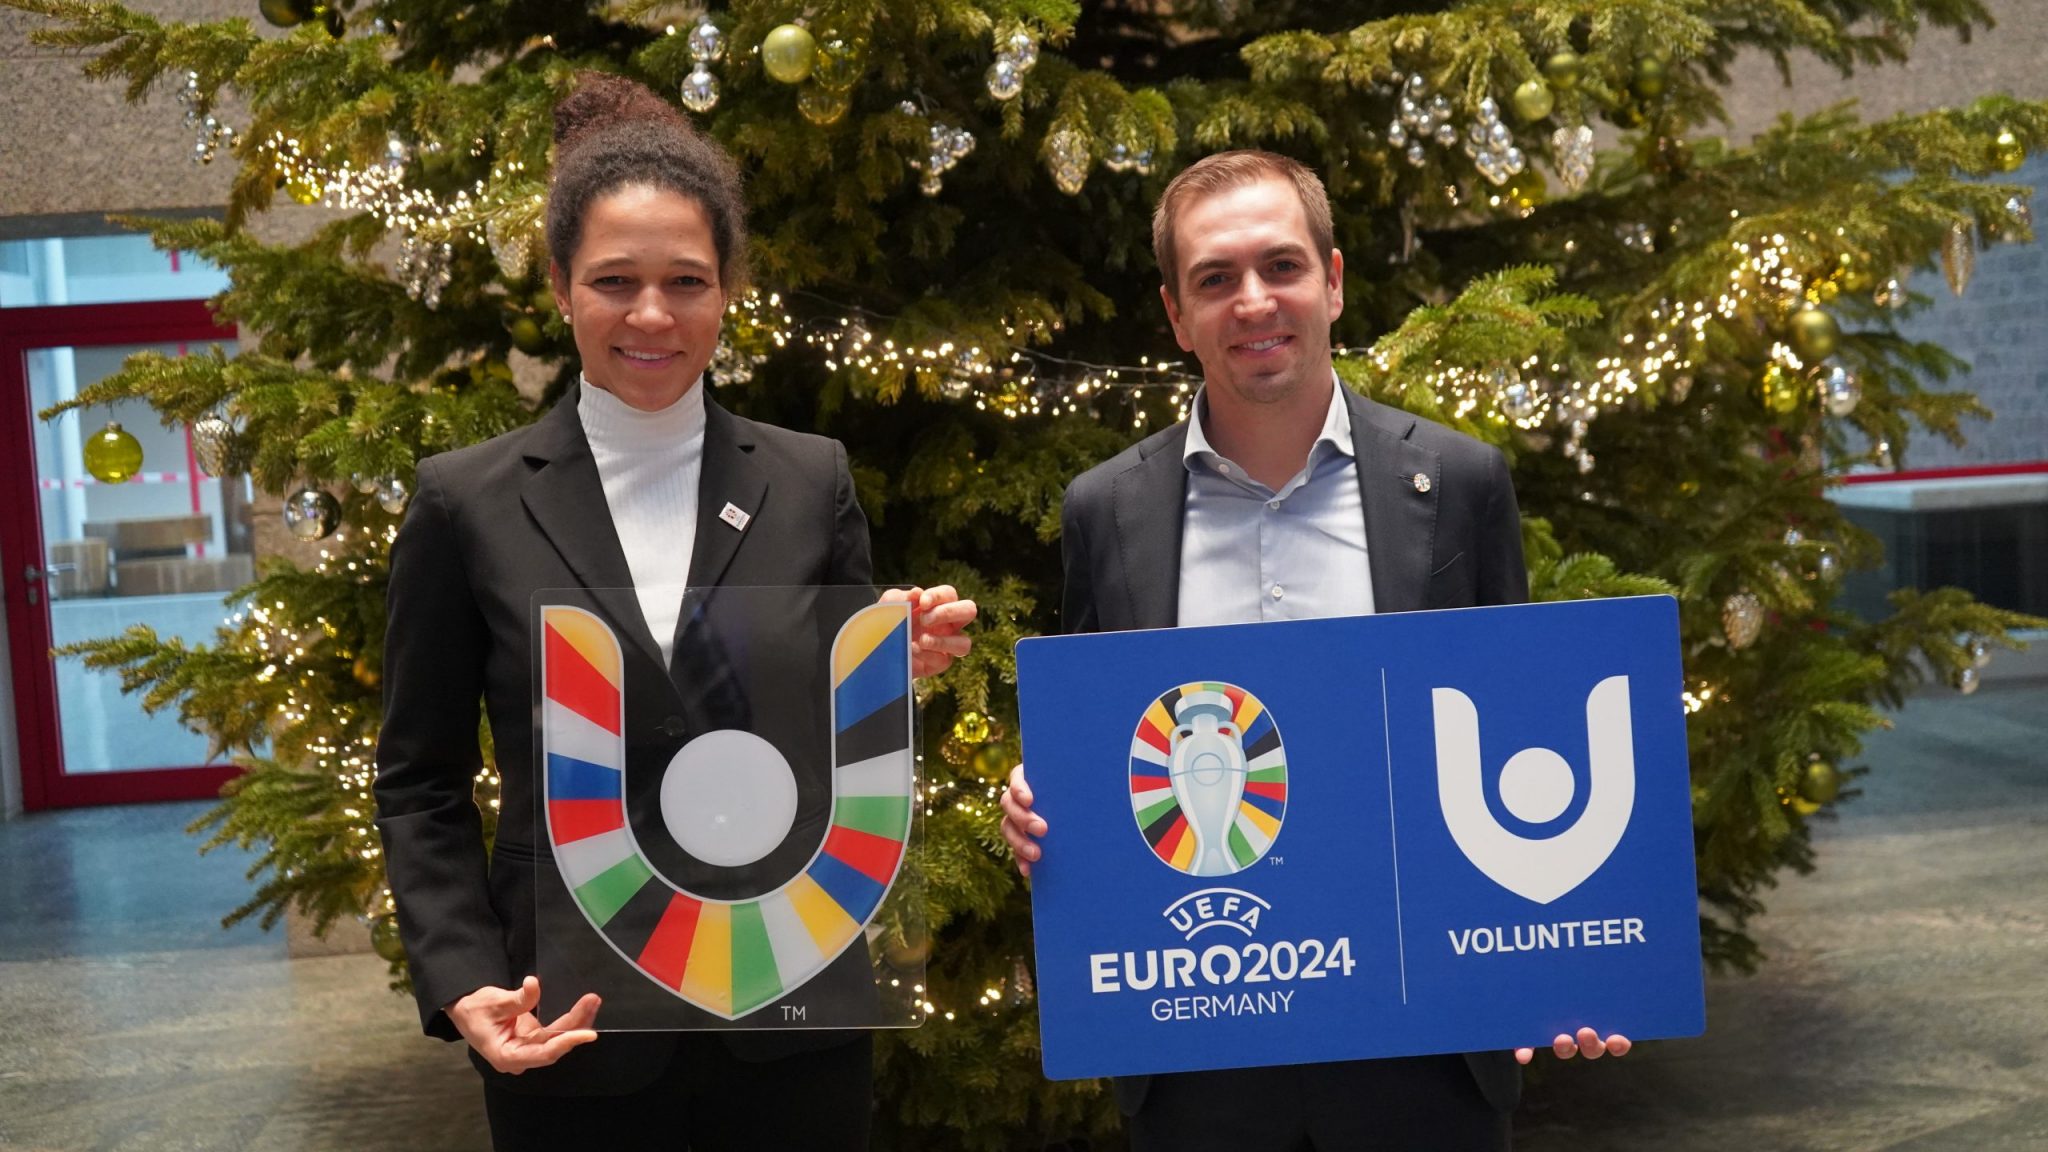 UEFA EURO 2024 VolunteerLogo präsentiert